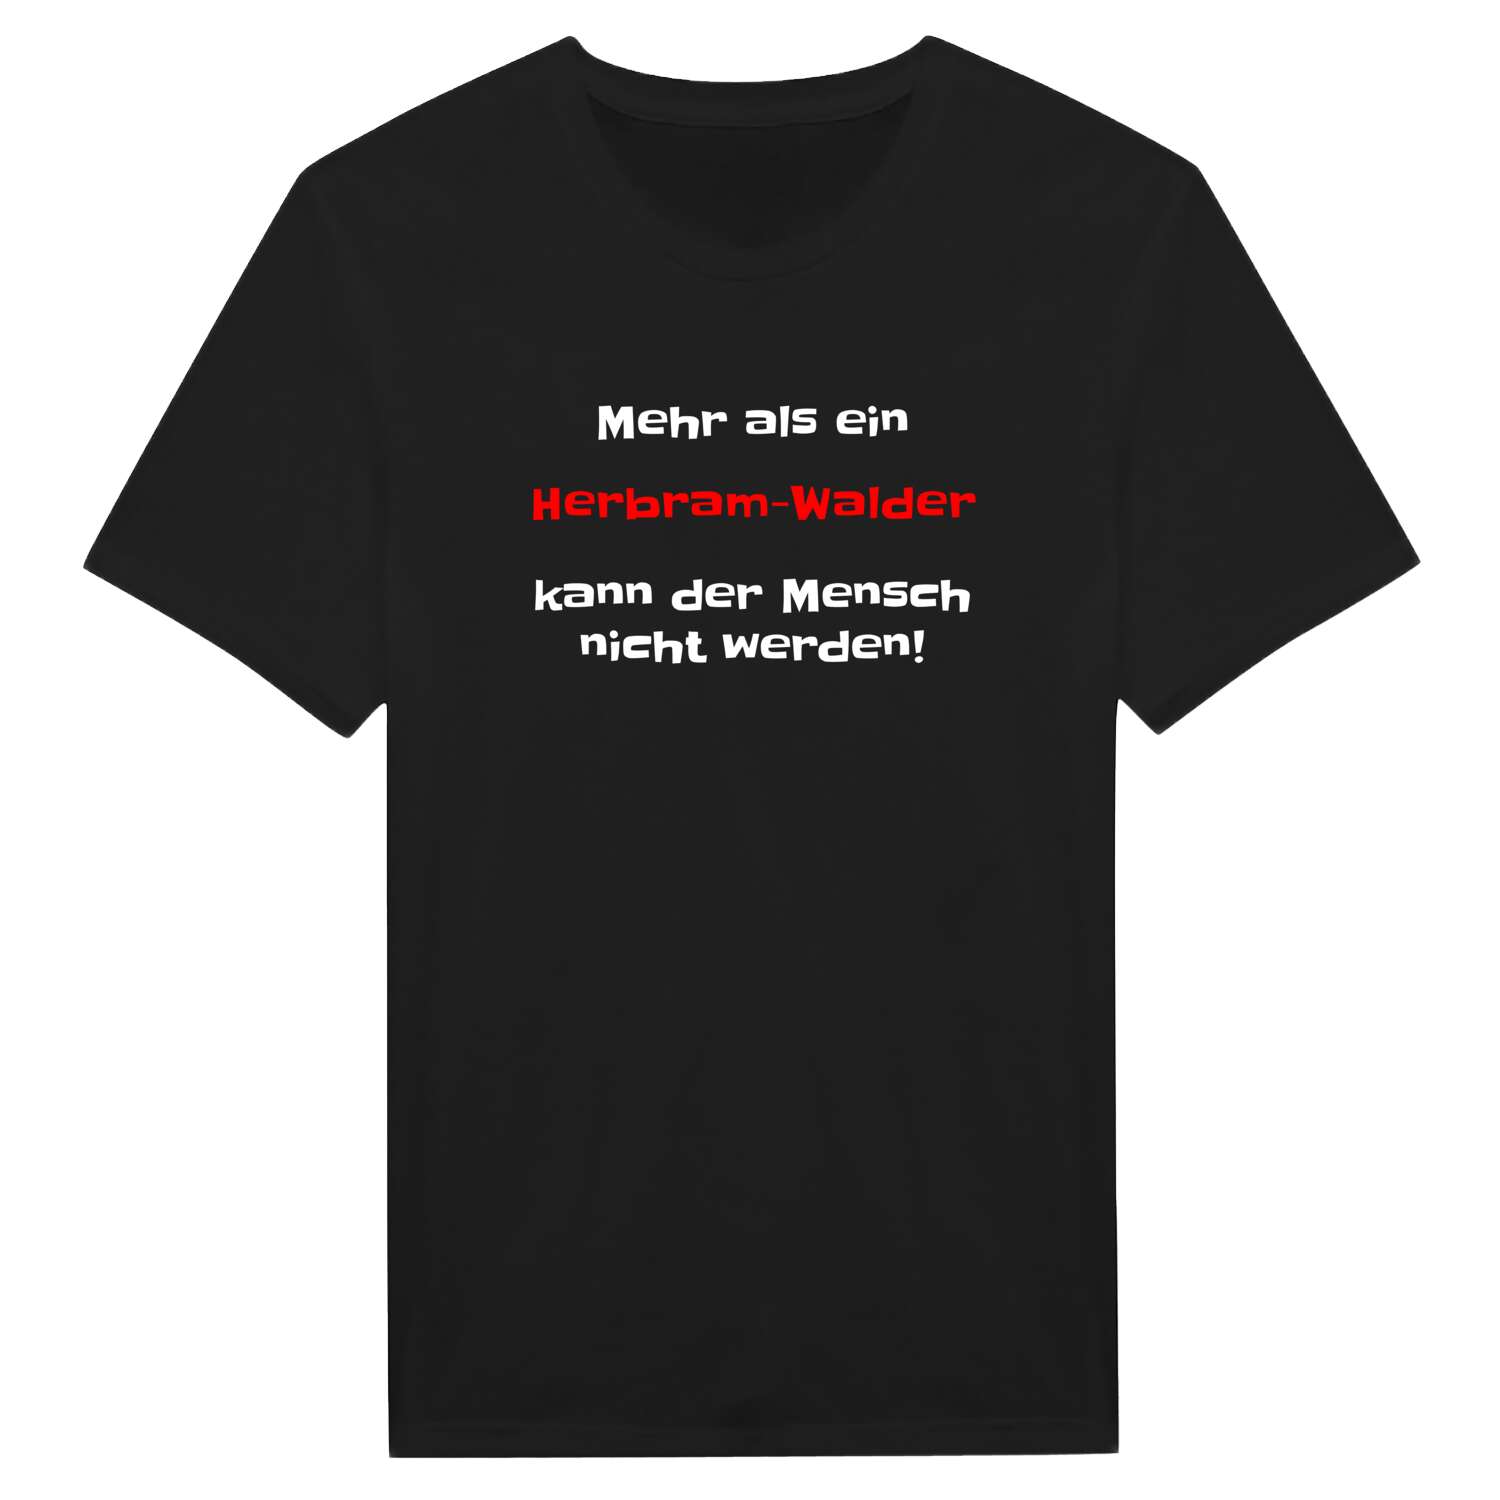 Herbram-Wald T-Shirt »Mehr als ein«